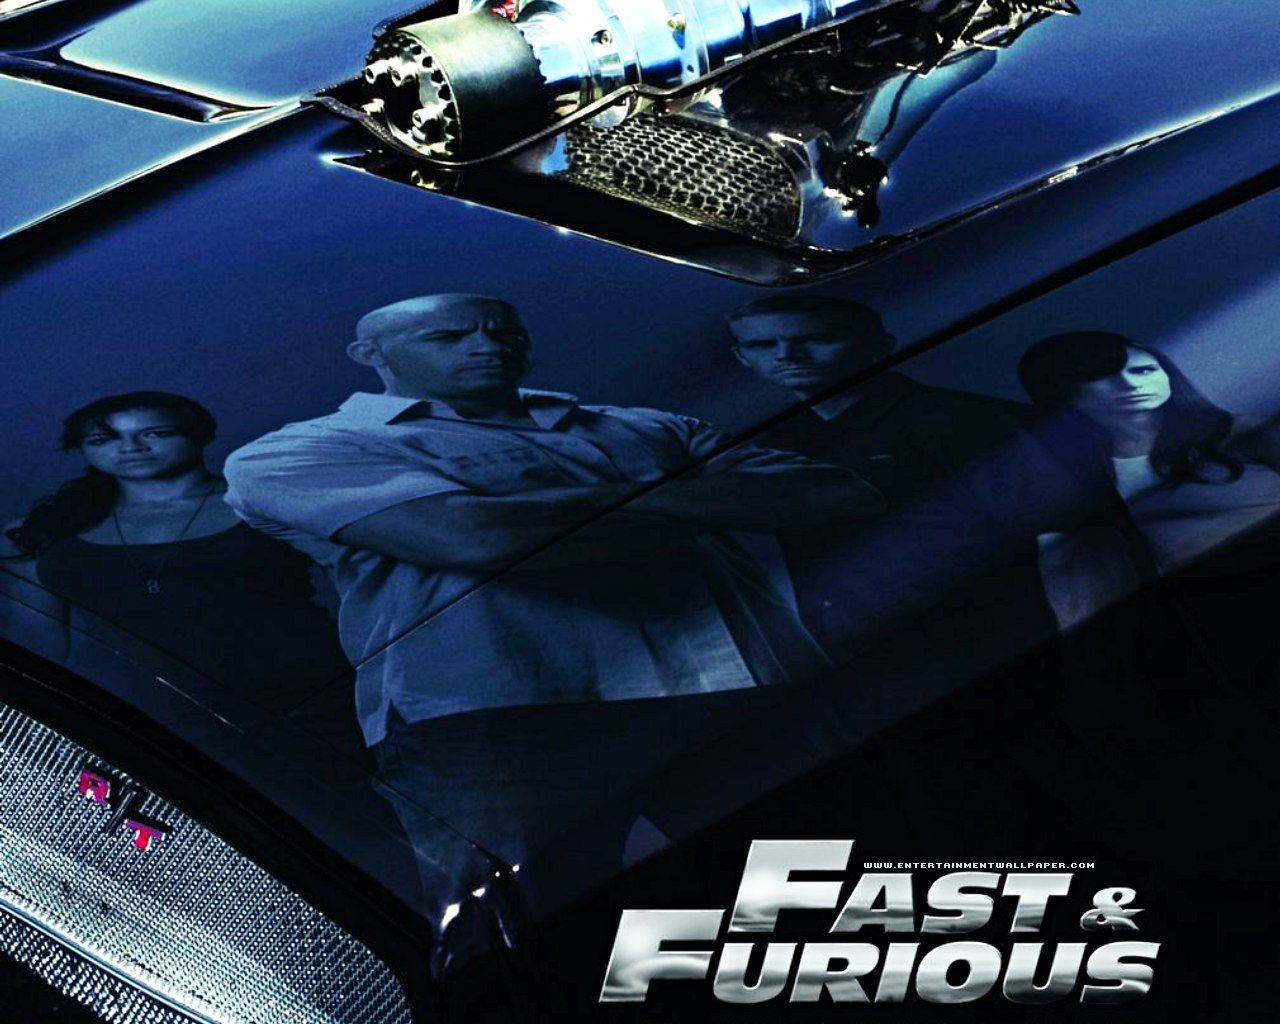 Fast & Furious Wallpaper. Furious 7 Wallpaper, Furious Wallpaper and Furious 7 Desktop Background